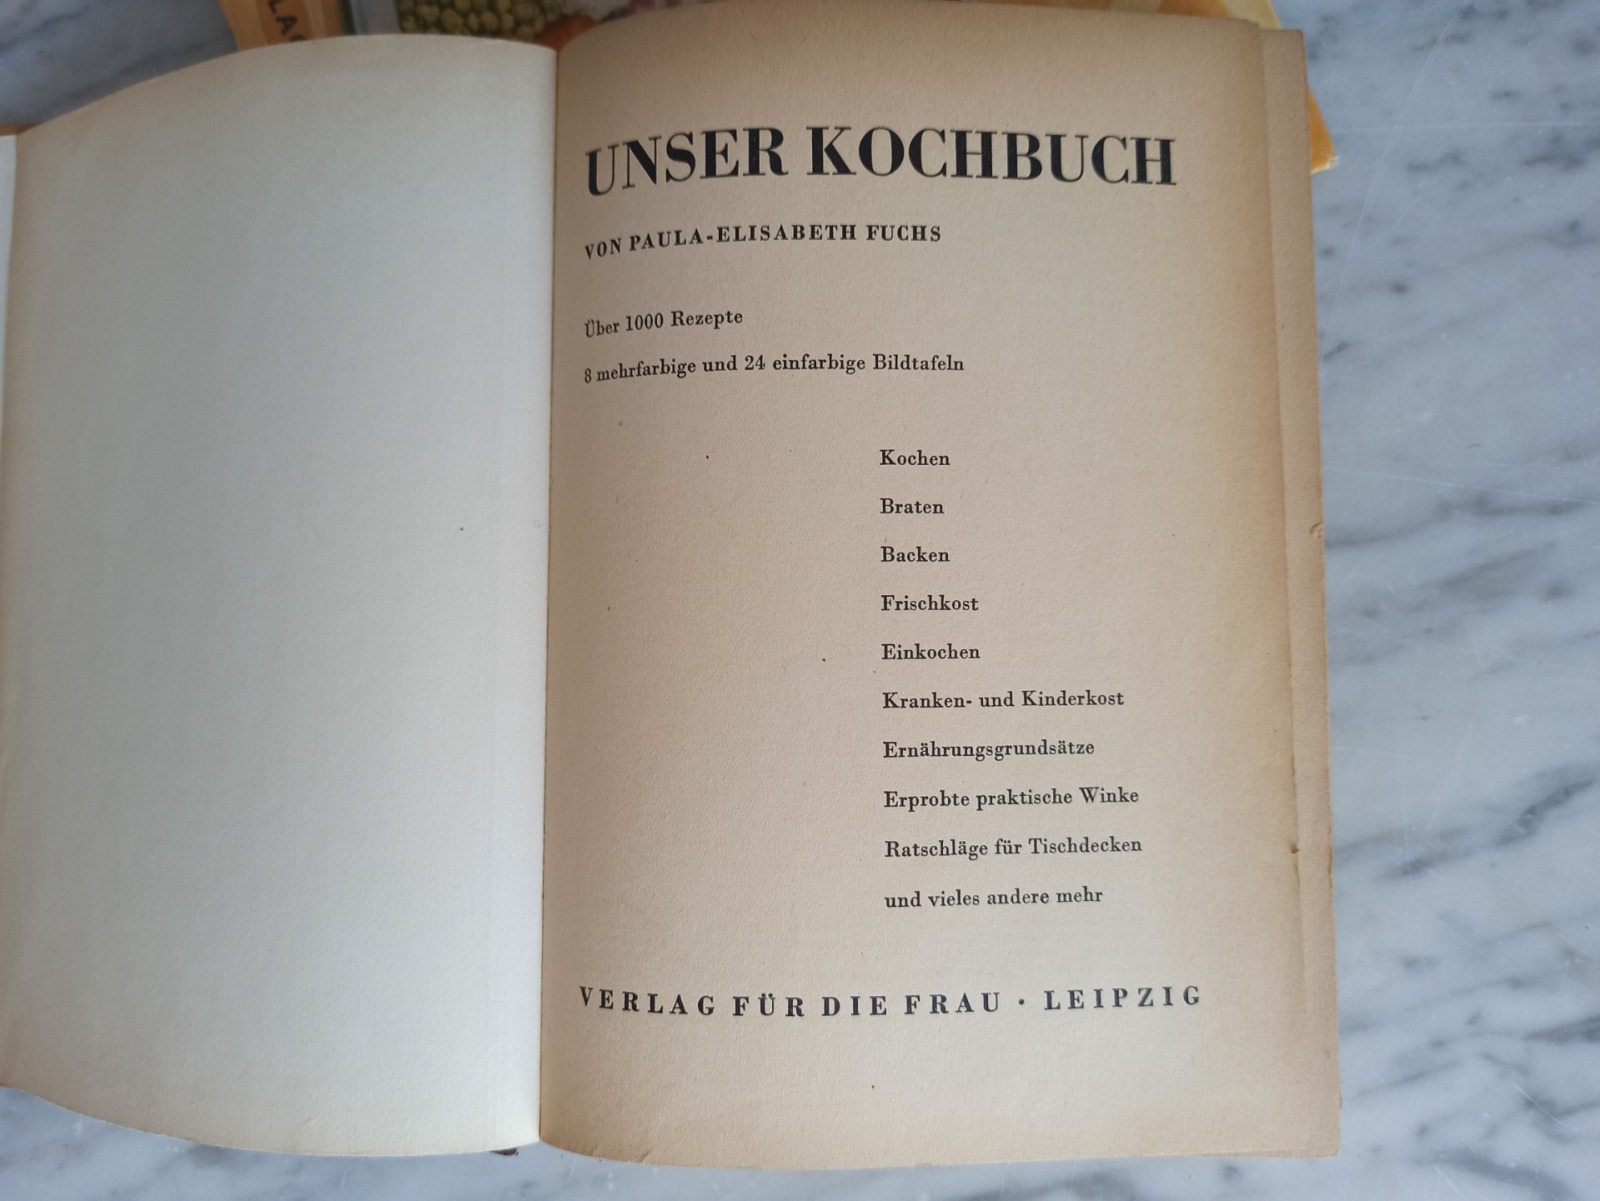 Unser Kochbuch / Verlag für die Frau 4